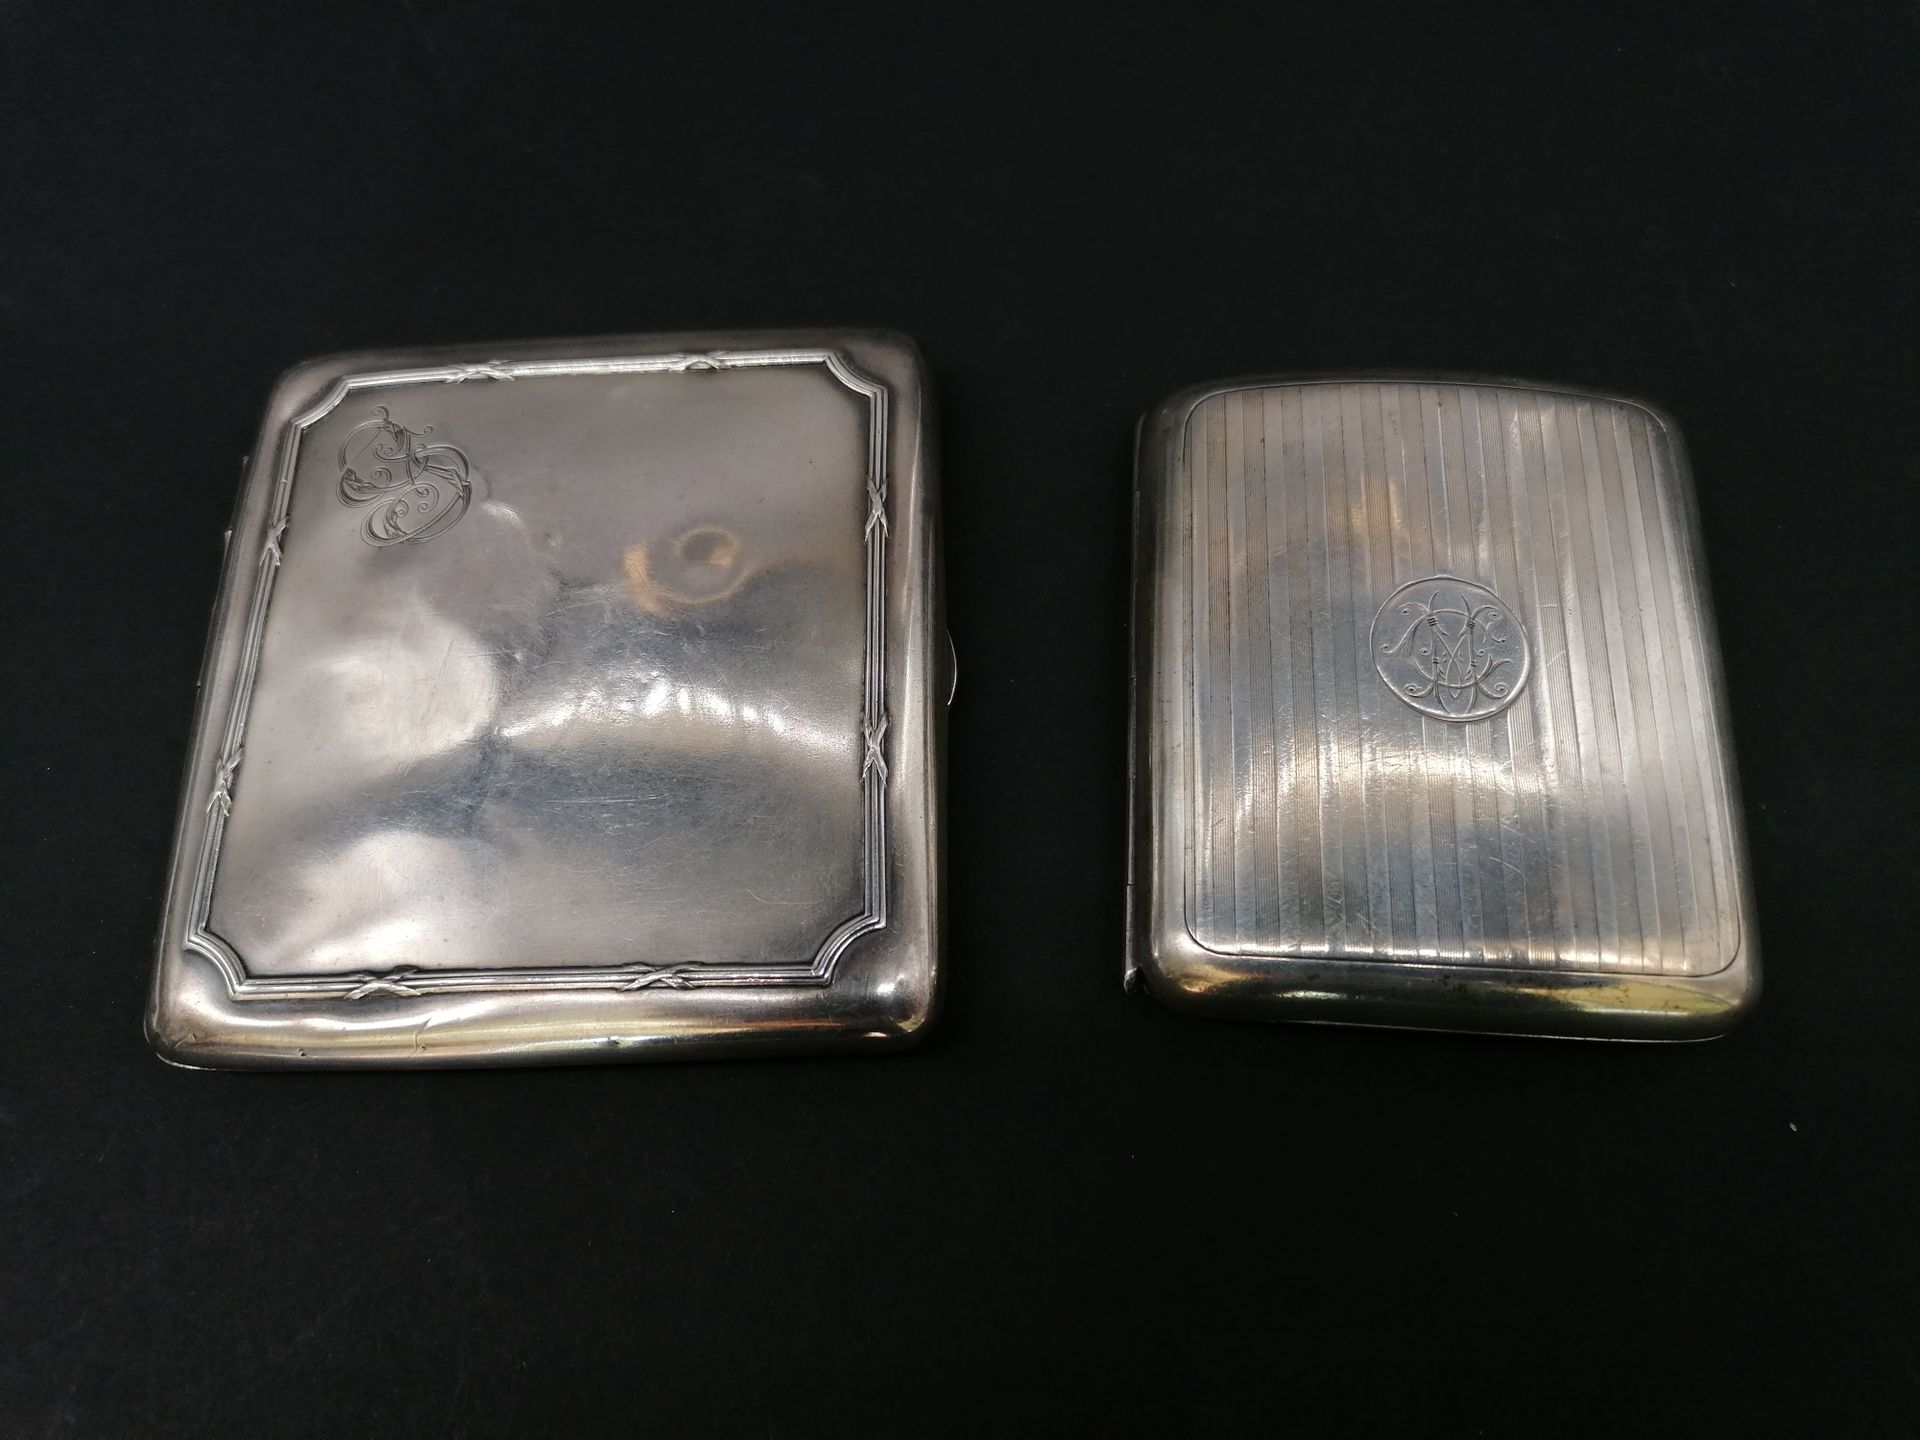 Null 两套雪茄烟具拍品

银色一字型。

一枚英国印有Sampson Mordan & Co，伦敦。

PN 196 g